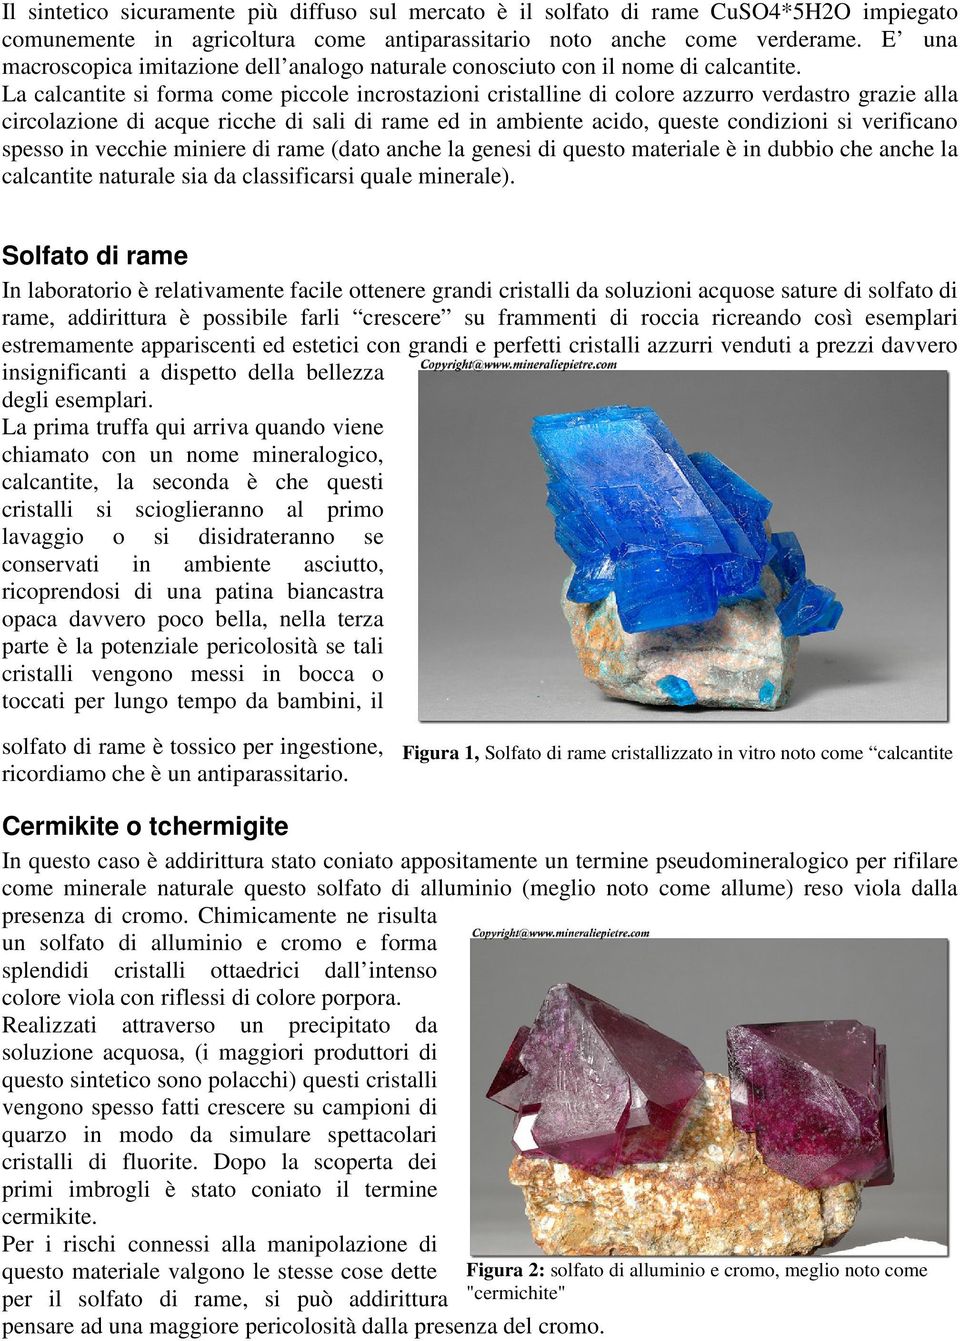 La calcantite si forma come piccole incrostazioni cristalline di colore azzurro verdastro grazie alla circolazione di acque ricche di sali di rame ed in ambiente acido, queste condizioni si